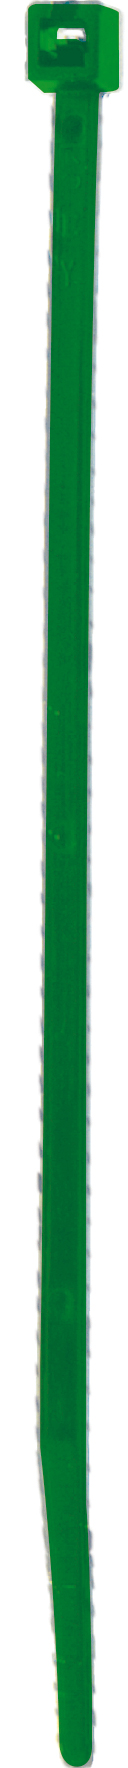 Cod. 36300Z251000C - FS Fascetta per cablaggio in nylon - Verde